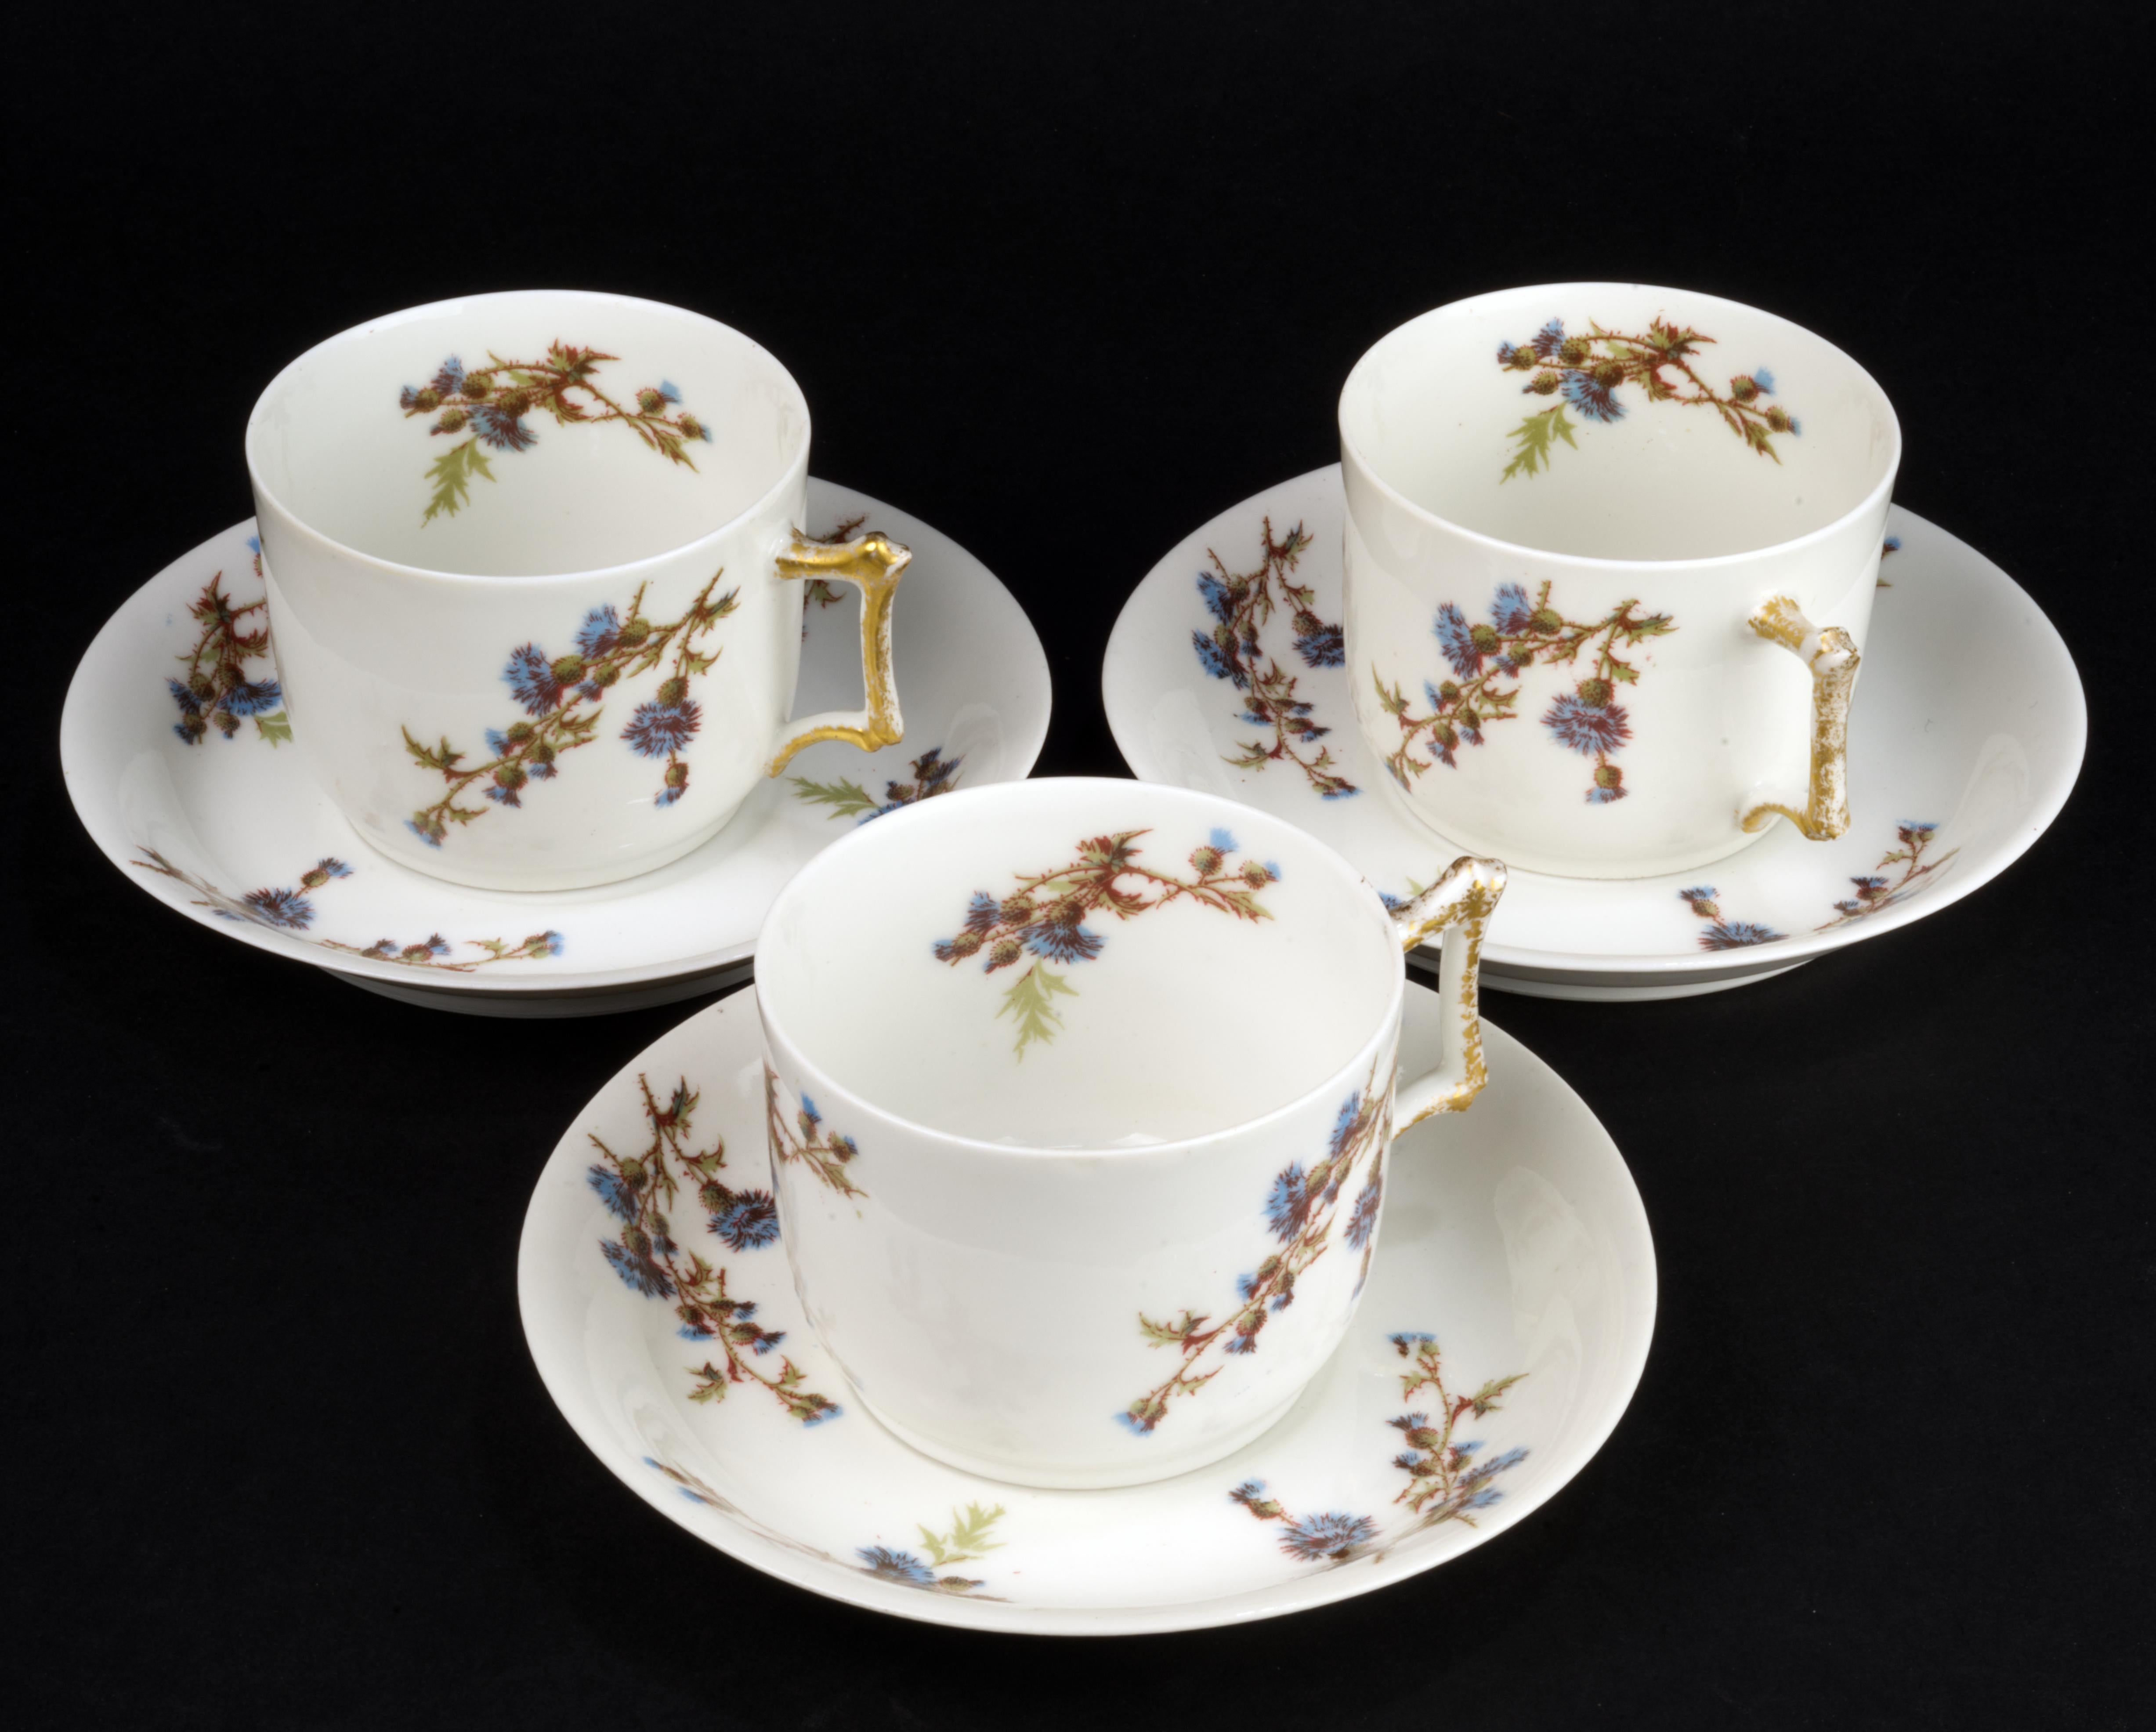 
Das Set aus 3 Tassen und 3 Untertassen von Guerin &Co wurde aus feinem, halbtransparentem Knochenporzellan in Limoges, Frankreich, hergestellt. Das Set ist von Hand im viktorianischen Stil mit ornamentalen blauen und braunen Distelblumenmotiven auf